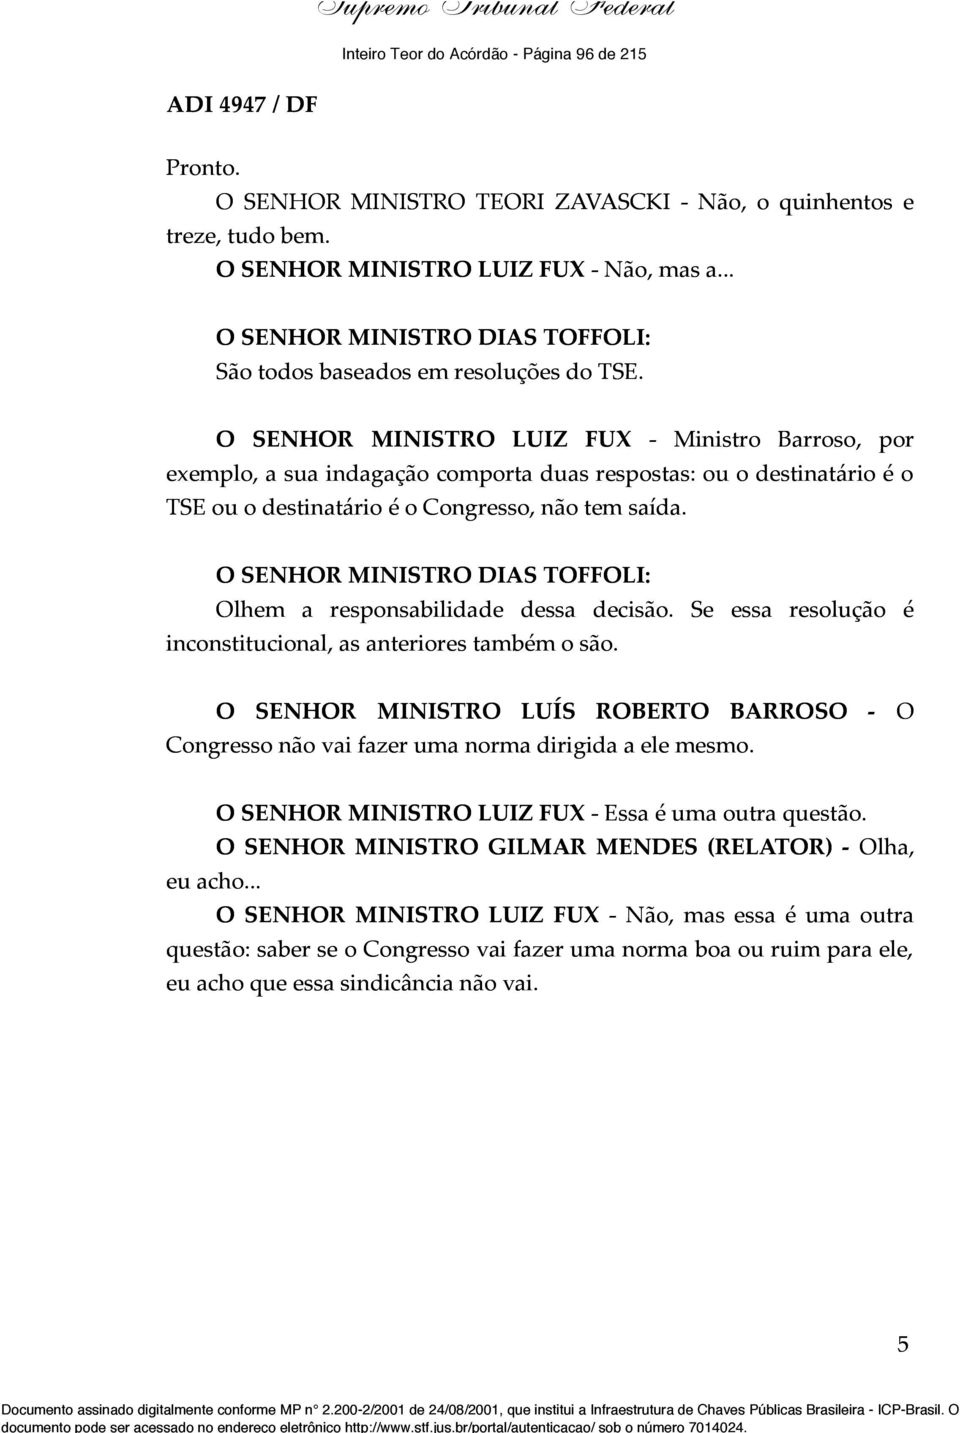 O SENHOR MINISTRO LUIZ FUX - Ministro Barroso, por exemplo, a sua indagação comporta duas respostas: ou o destinatário é o TSE ou o destinatário é o Congresso, não tem saída.